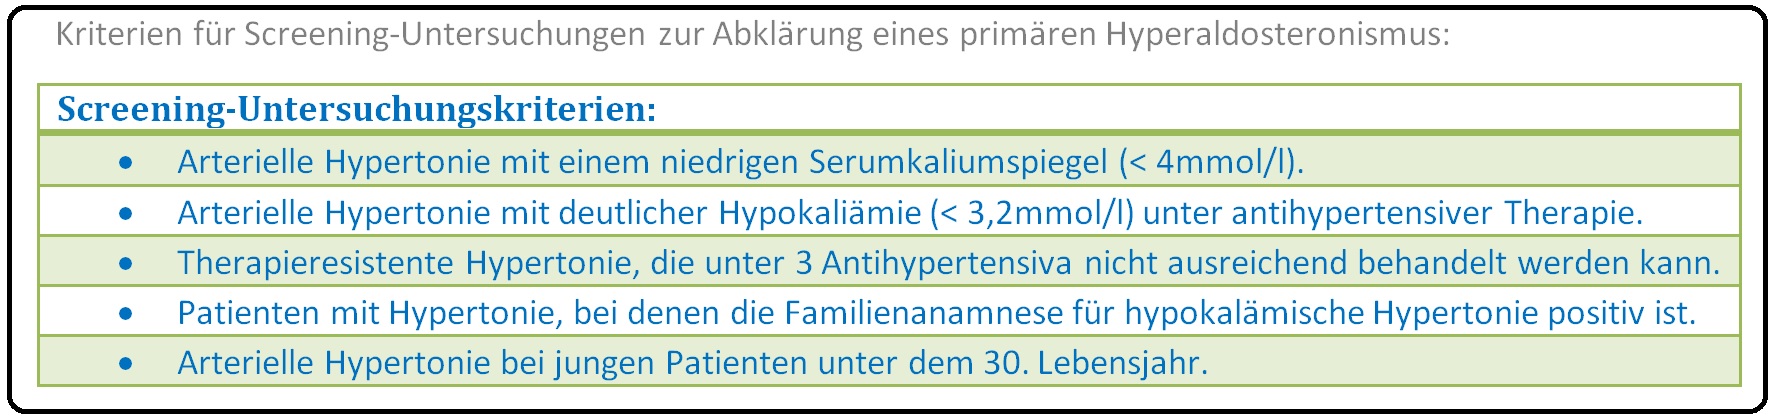 634 Kriterien für Screening Untersuchungen zur Abklärung des primären Hyperaldosteronismus